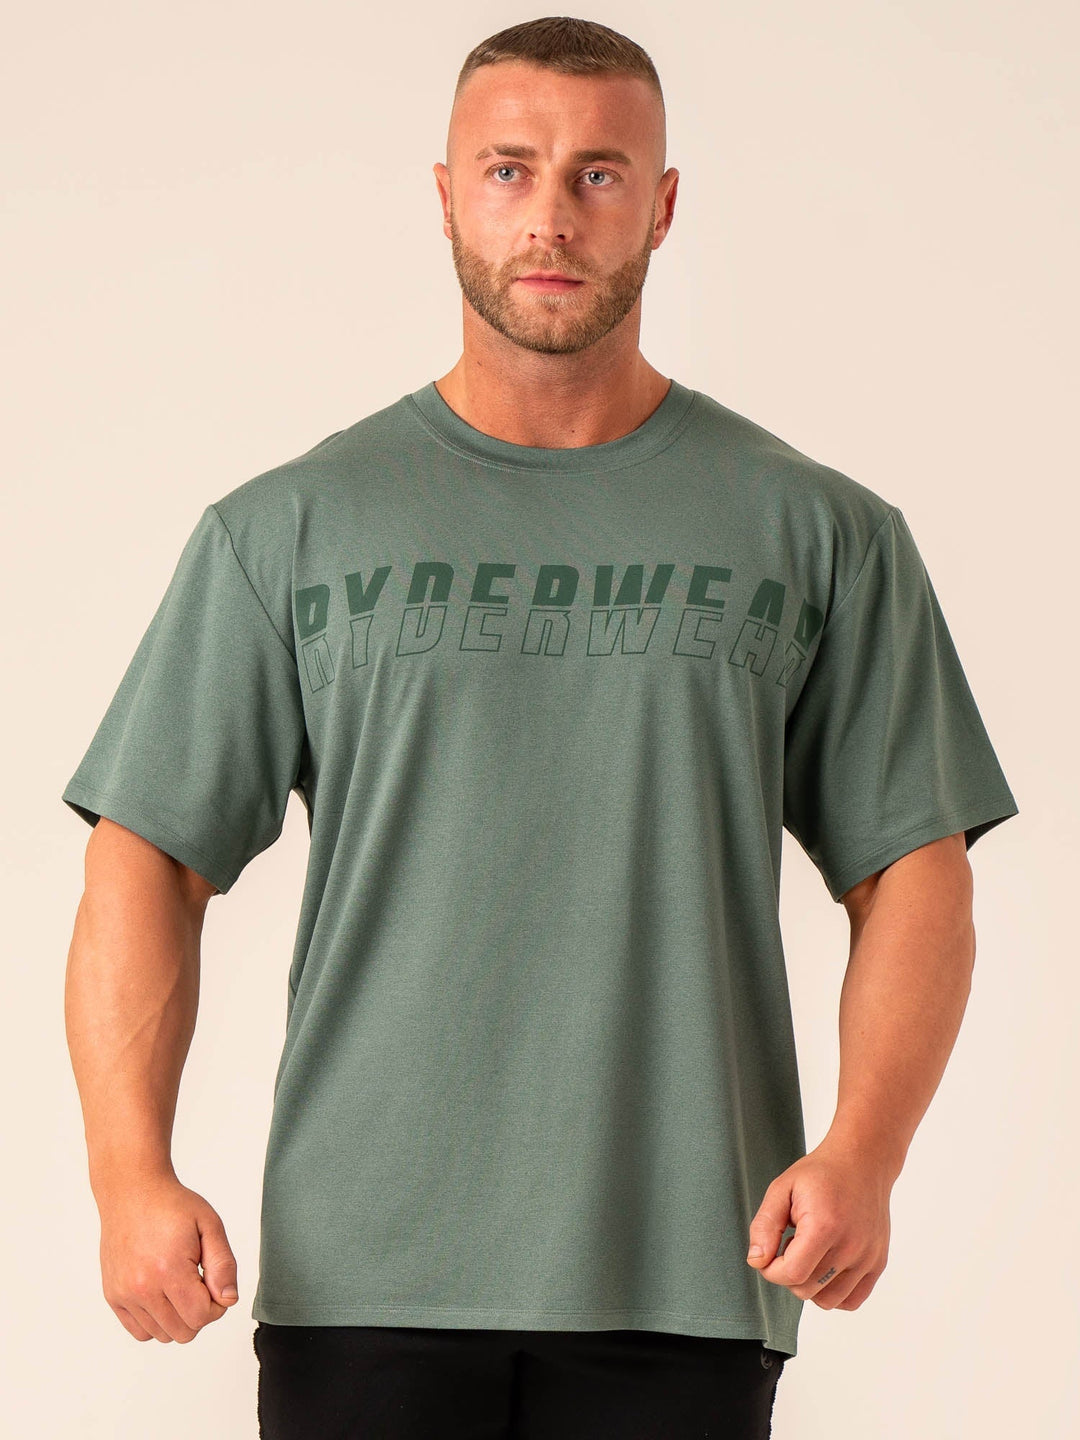 Soft Tech Oversized T-Shirt - Fern Green Marl Clothing Ryderwear 